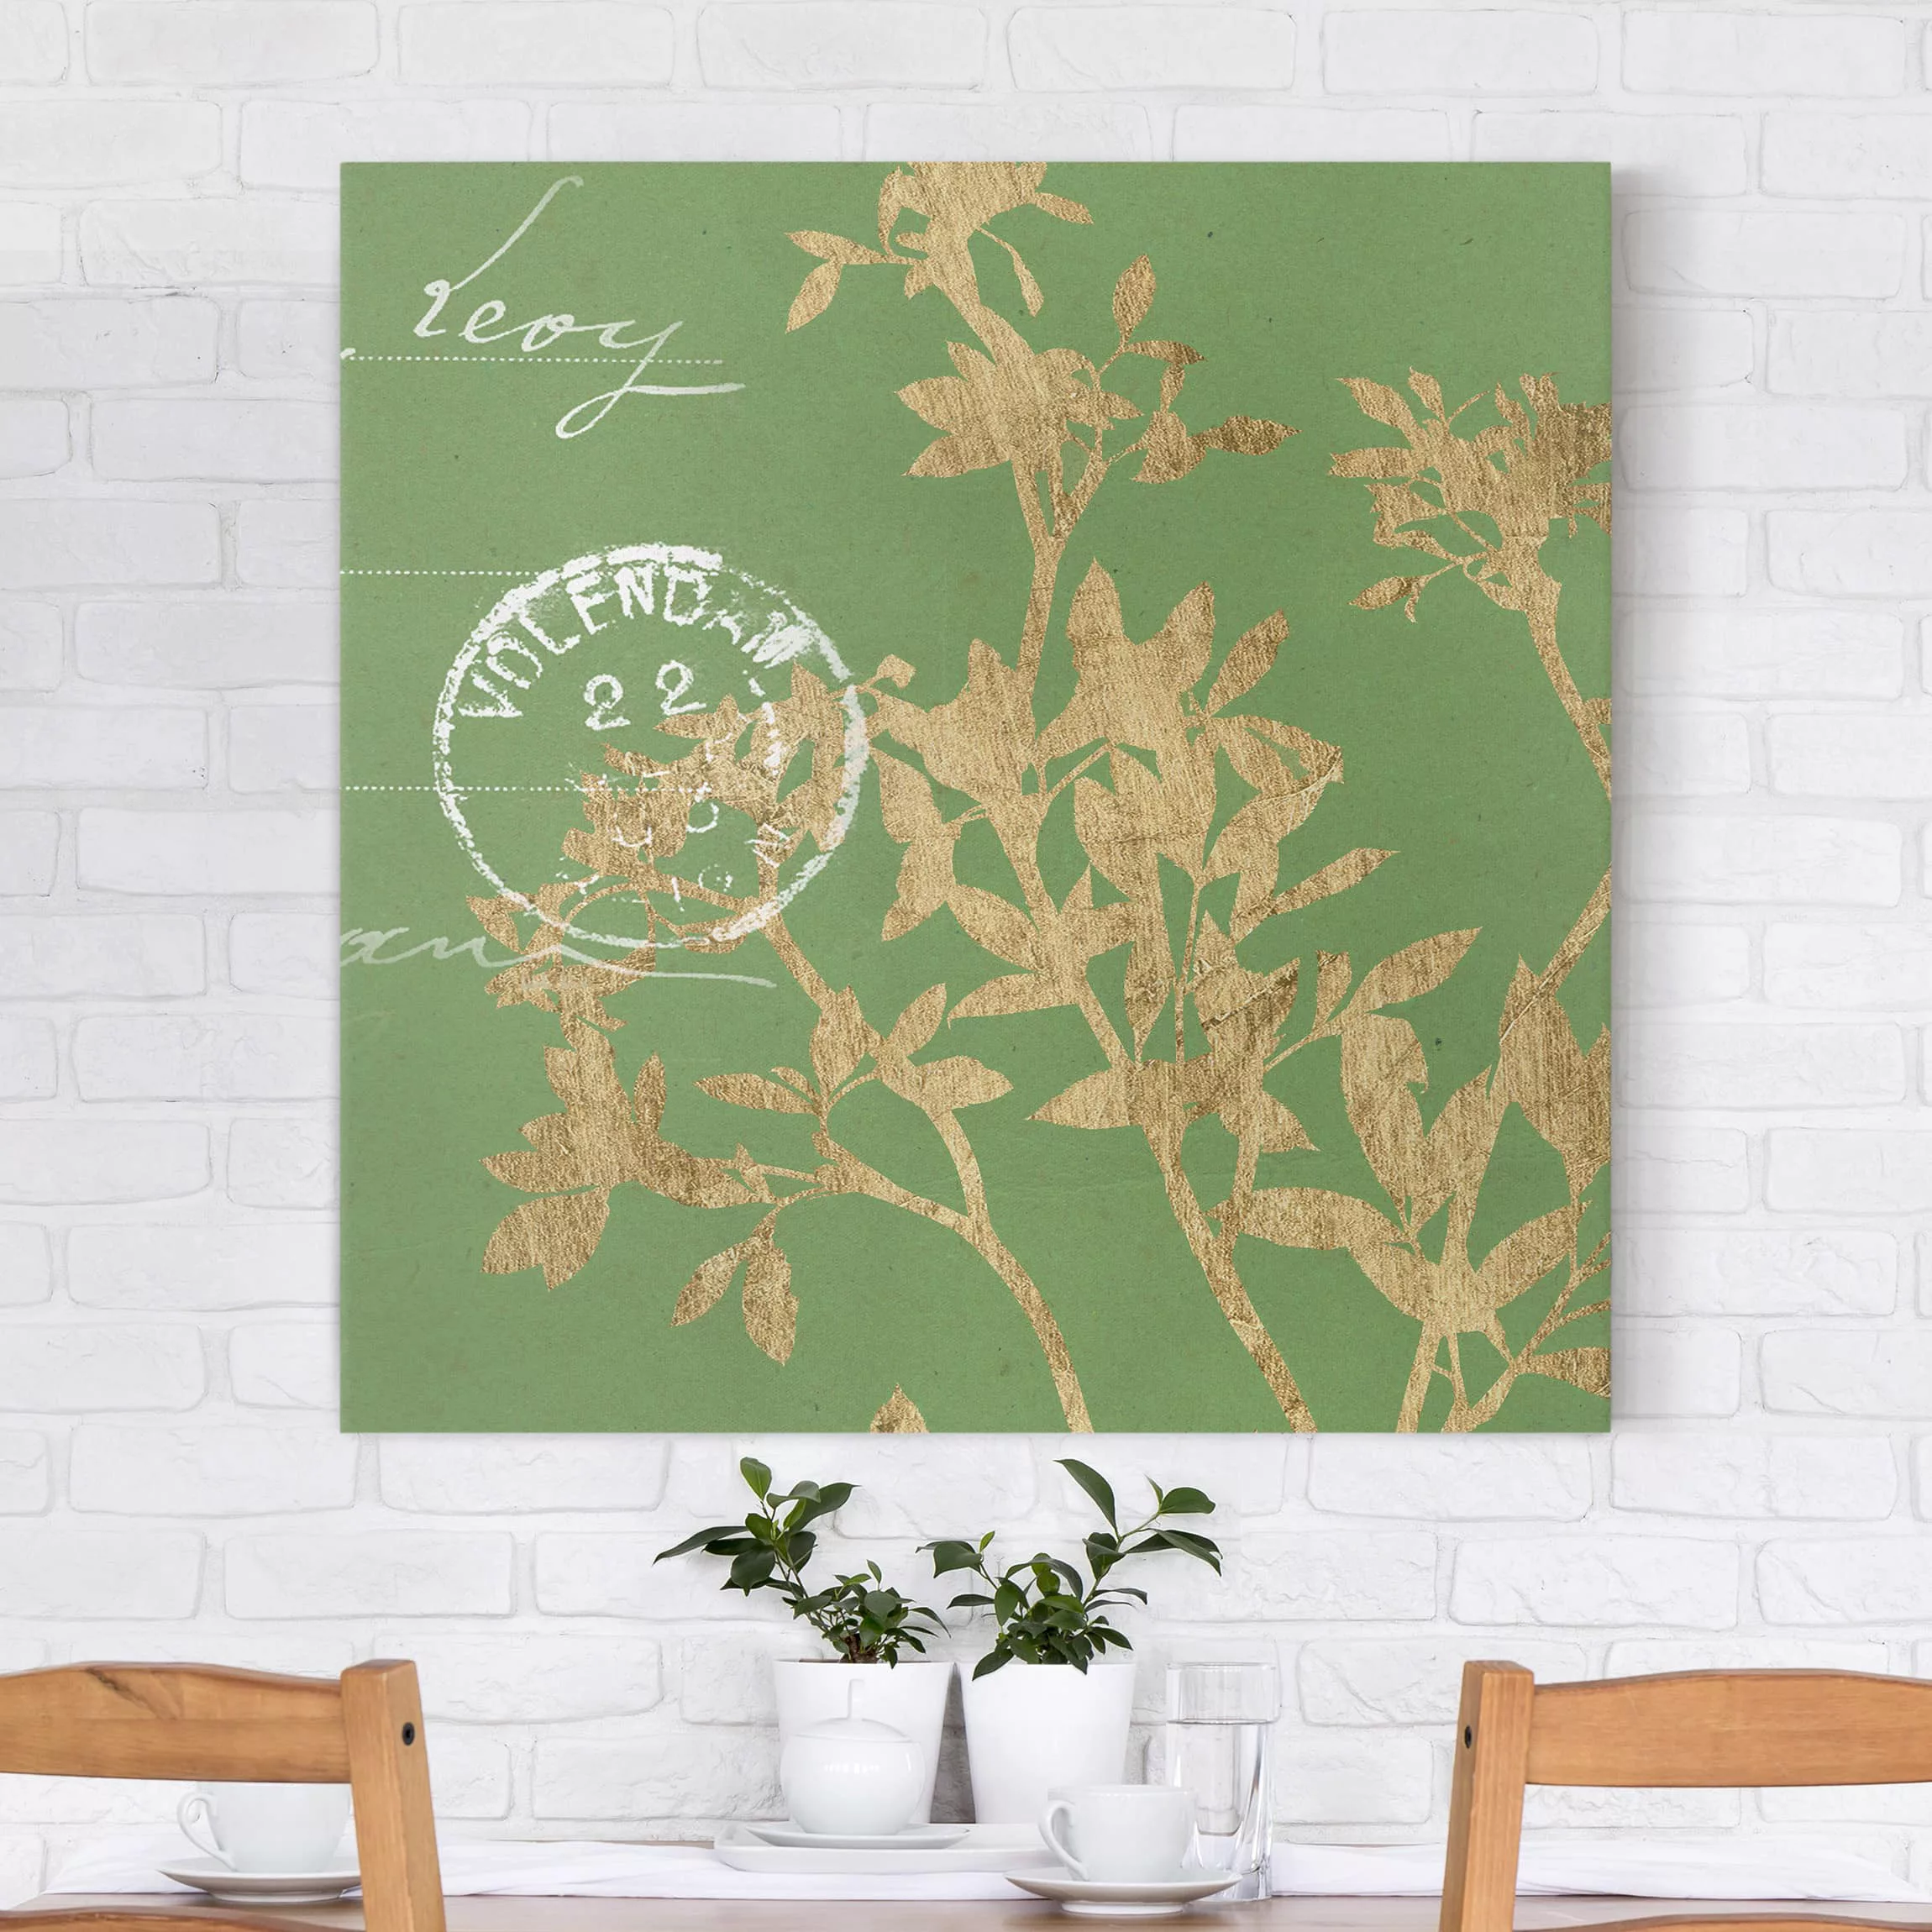 Leinwandbild Spruch - Quadrat Goldene Blätter auf Lind II günstig online kaufen